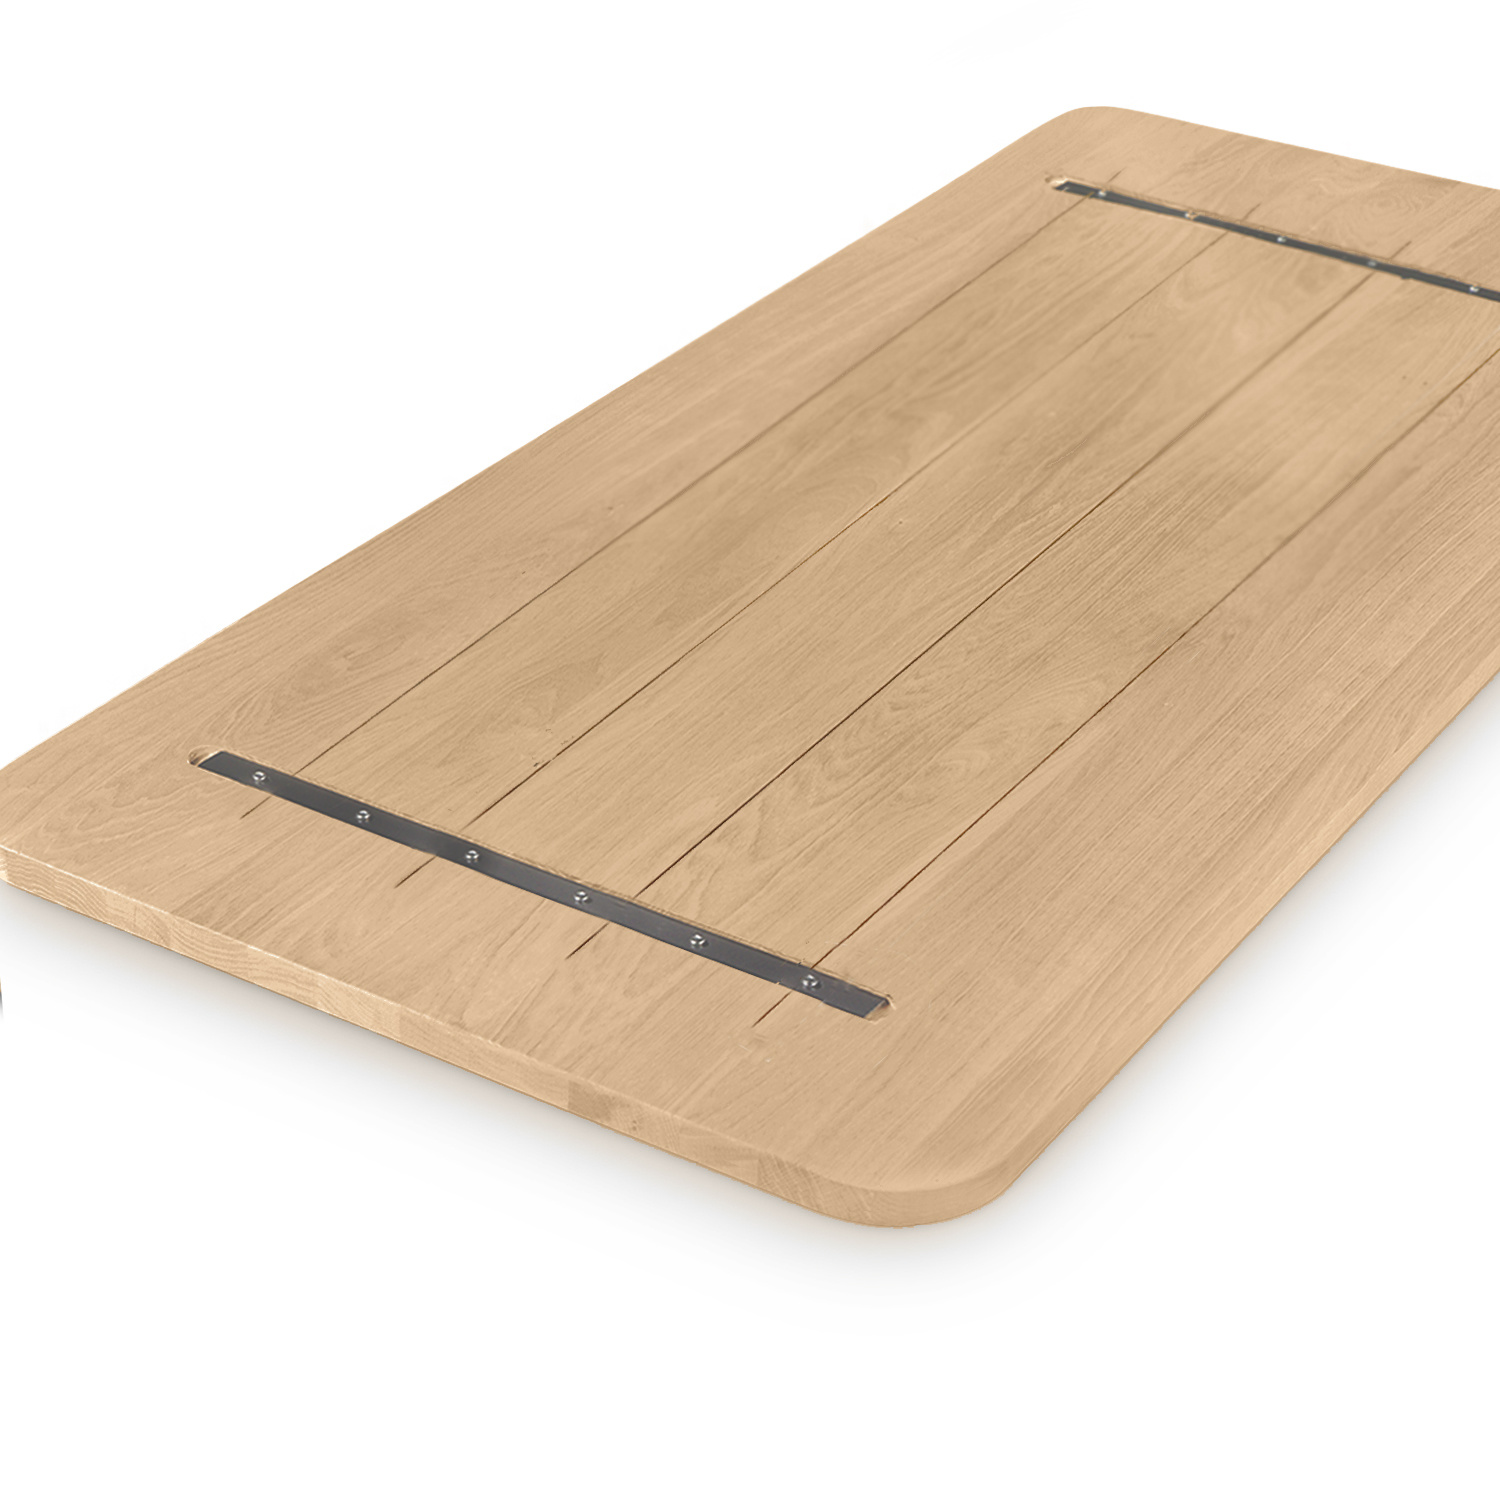  Tischplatte Eiche mit runden Ecken - nach Maß - 2 cm dick - Eichenholz rustikal - Eiche Tischplatte massiv - verleimt & künstlich getrocknet (HF 8-12%) - mit abgerundeten Kanten - 50-120x50-350 cm